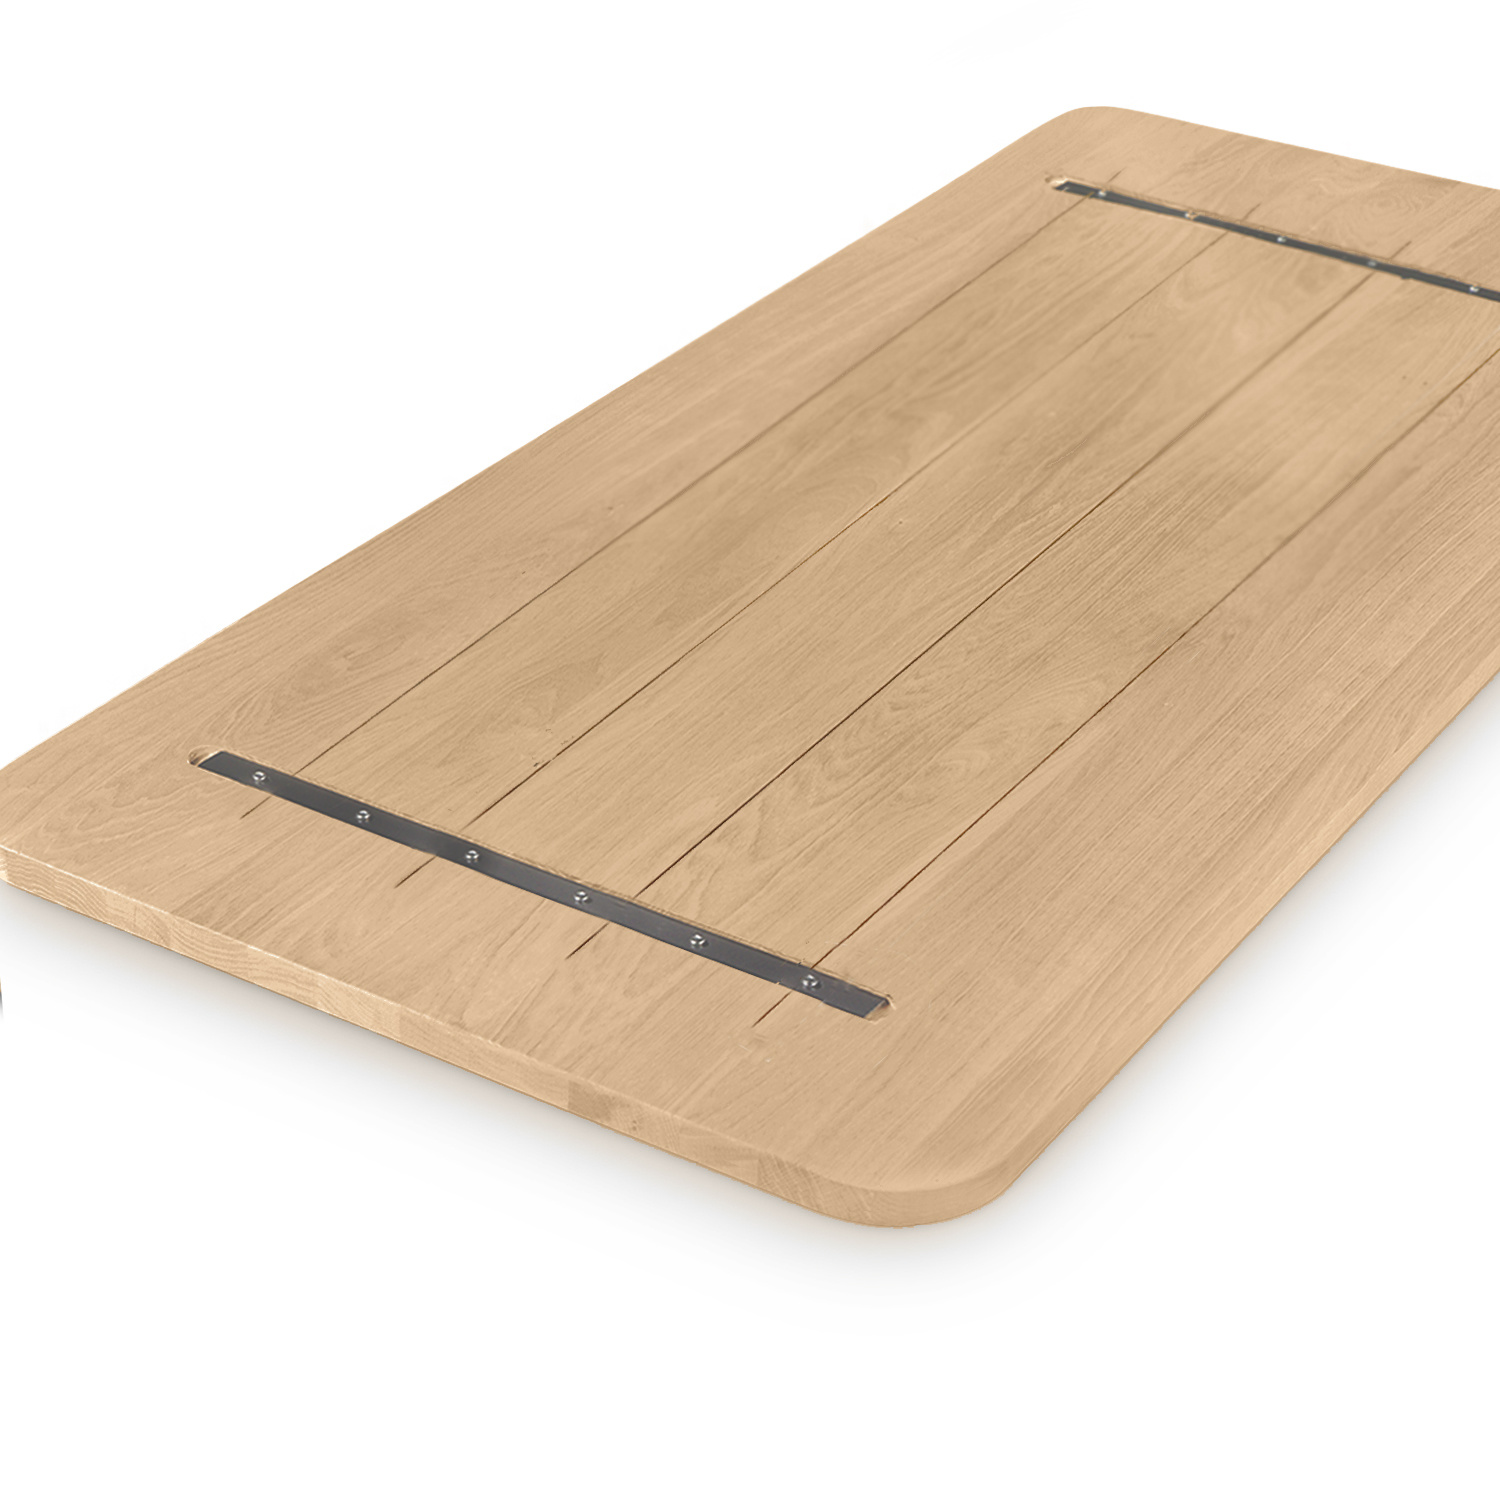  Tischplatte Eiche mit runden Ecken - nach Maß - 2 cm dick - Eichenholz rustikal - Eiche Tischplatte massiv - verleimt & künstlich getrocknet (HF 8-12%) - mit abgerundeten Kanten - 50-120x50-350 cm